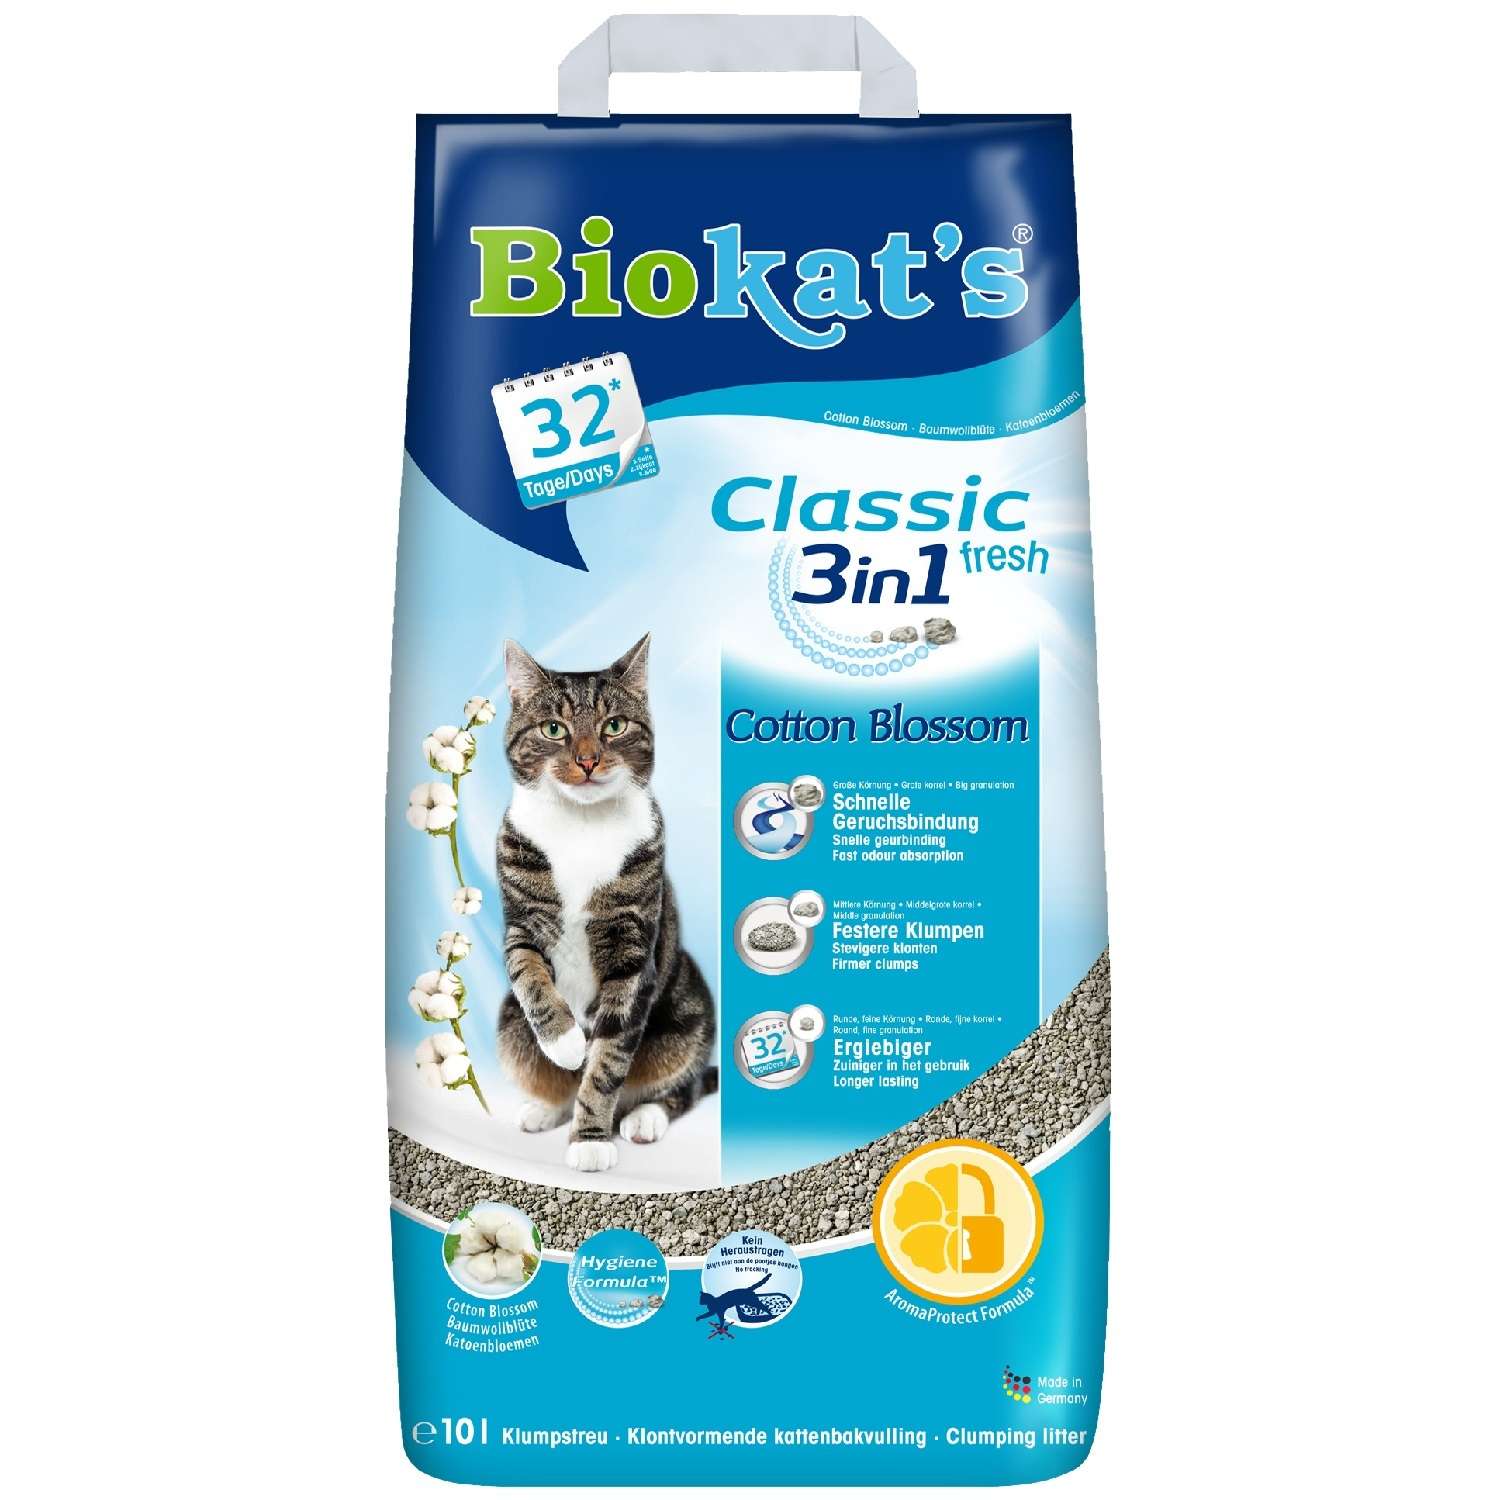 Наполнитель для кошек Biokats Классик Фреш 3в1 с ароматом хлопка 10л - фото 1